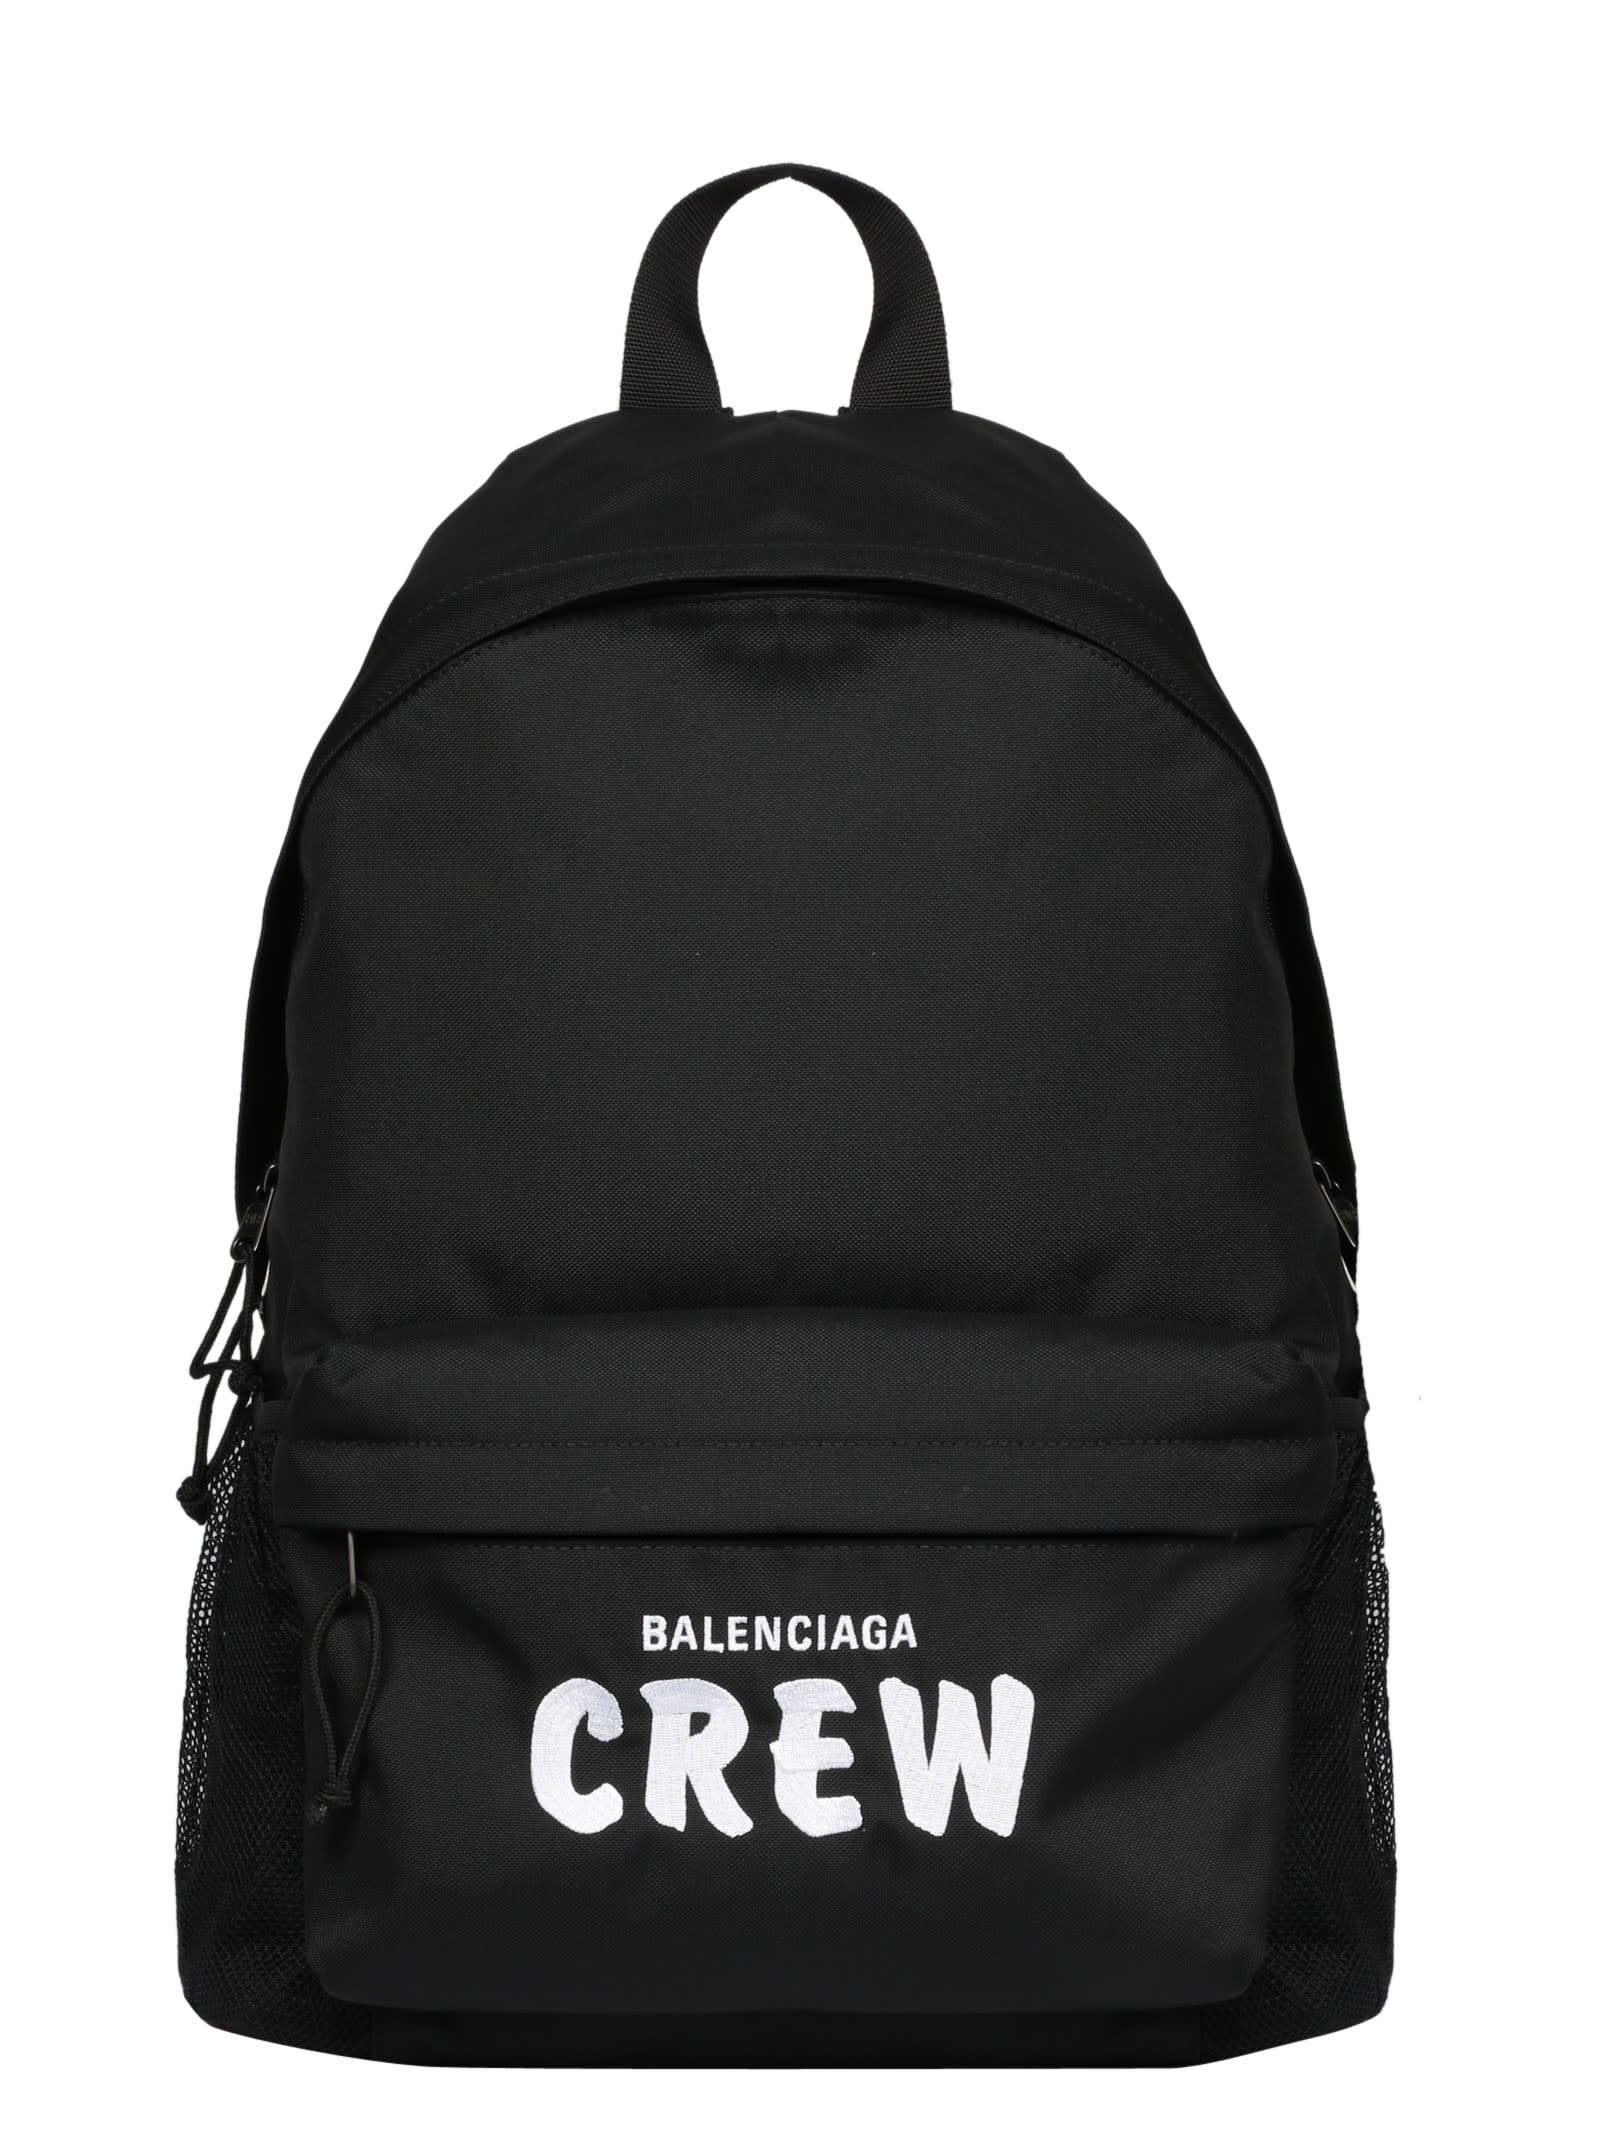 Balenciaga Crew Weekend Backpack